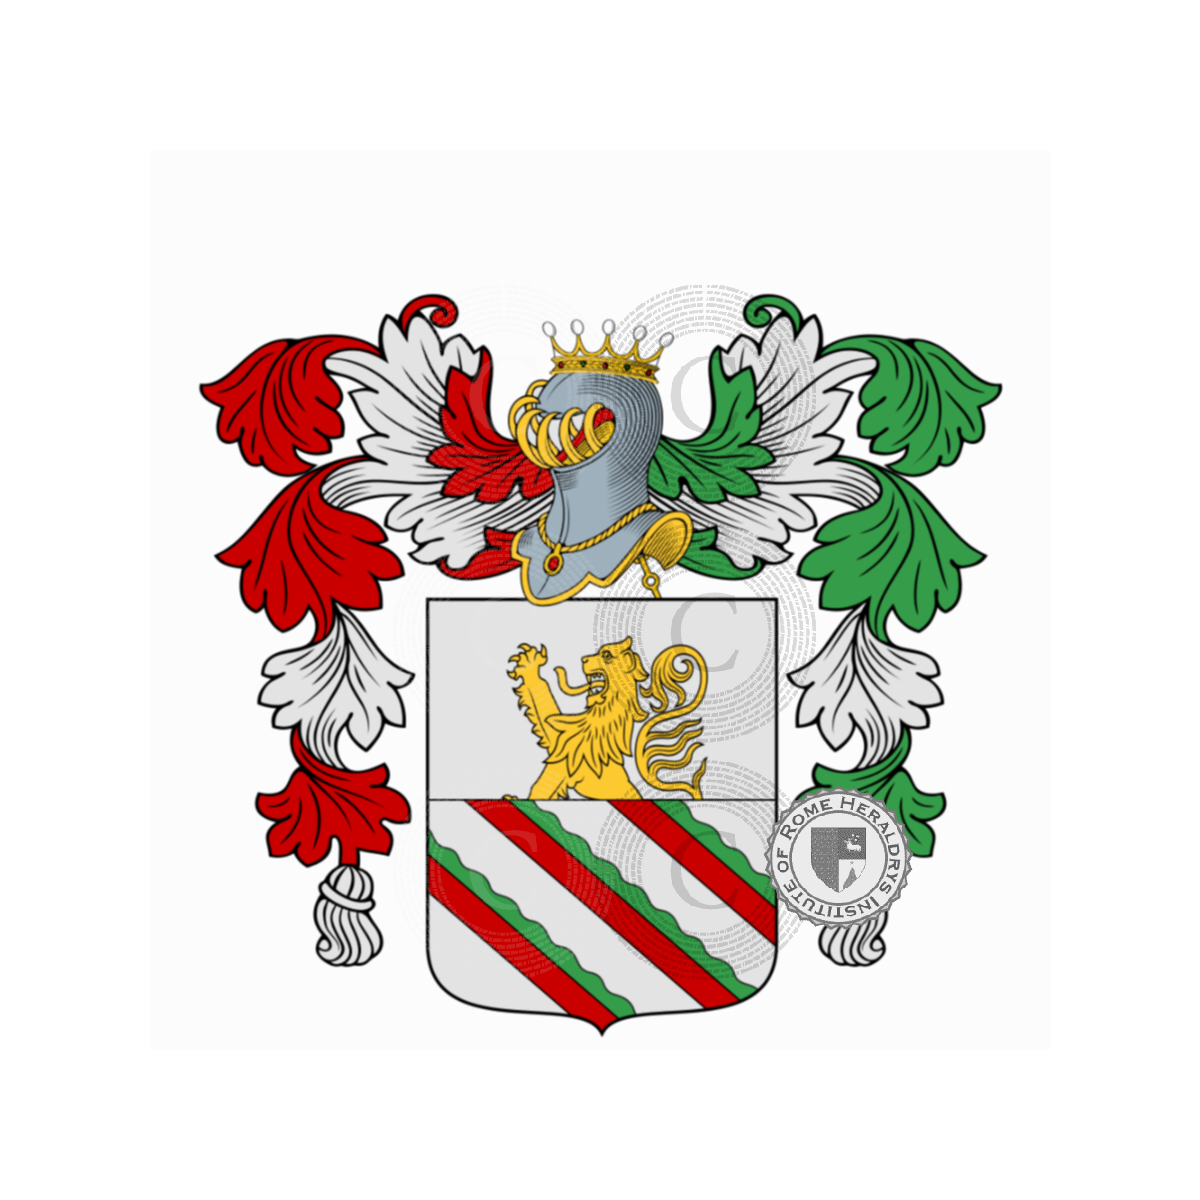 Wappen der FamilieVincenzi, de Vincenti,de Vincenzi,Devincenti,Devincentiis